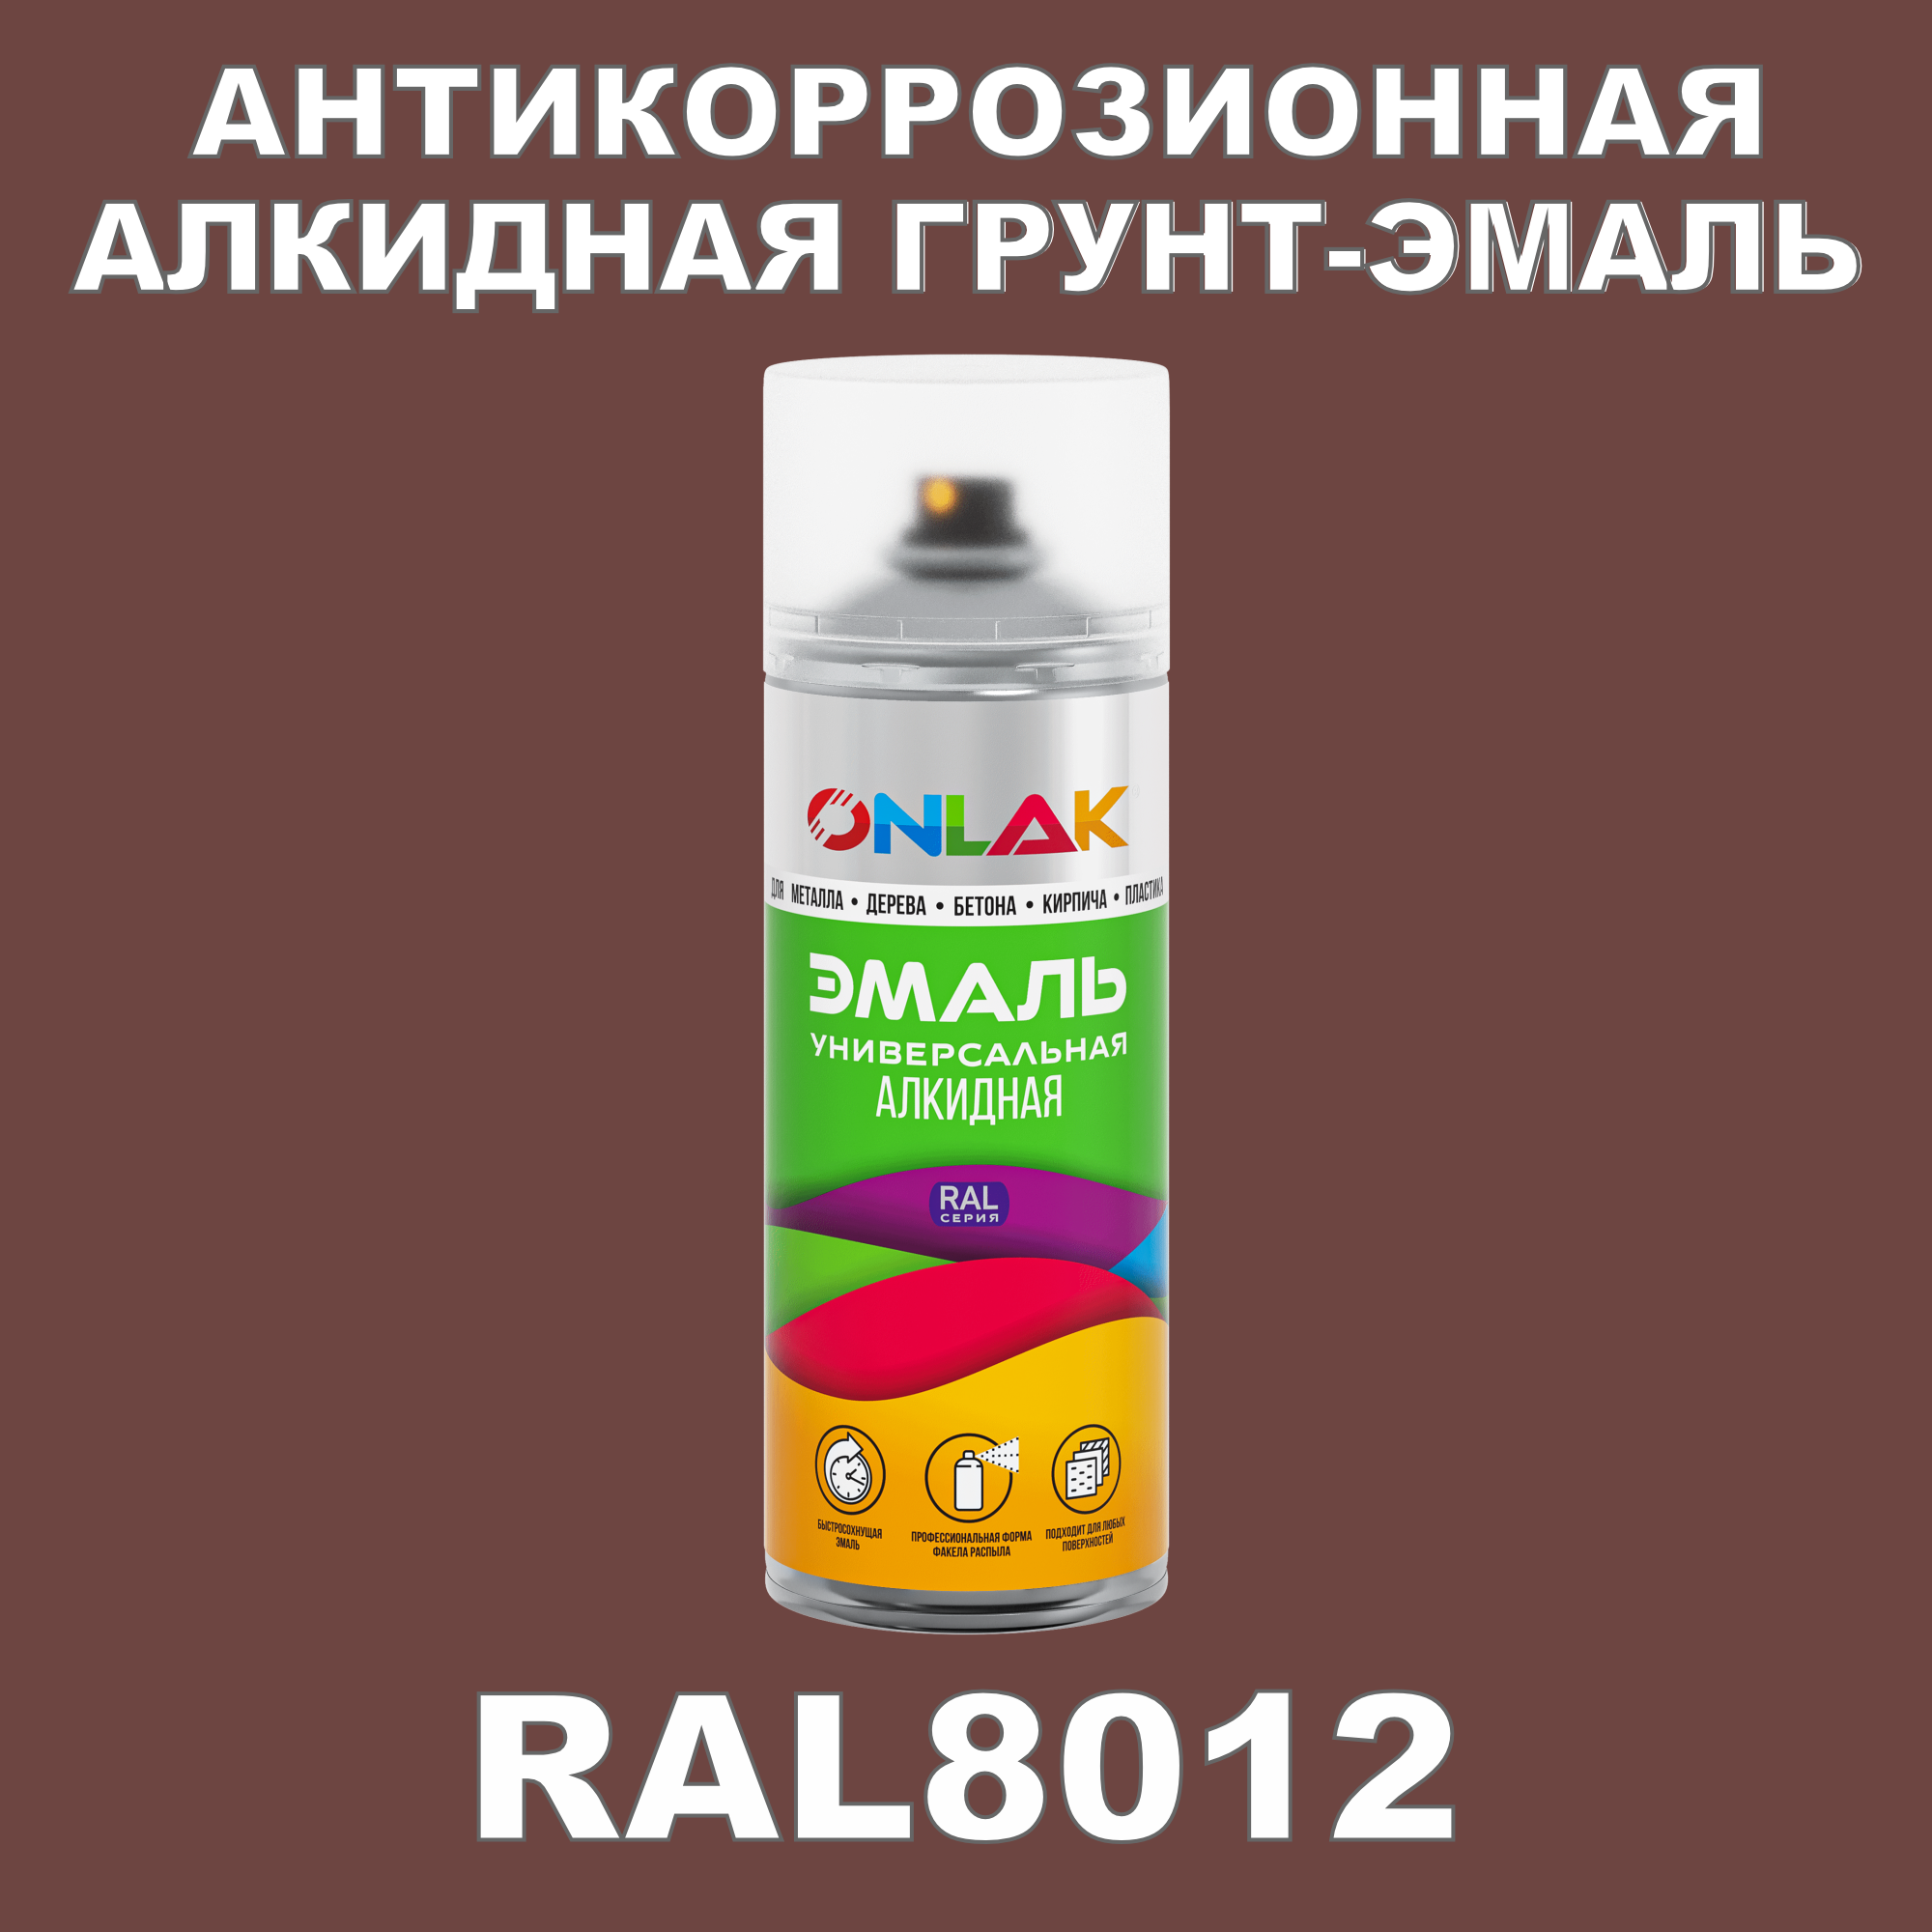 Антикоррозионная грунт-эмаль ONLAK RAL8012 полуматовая для металла и защиты от ржавчины